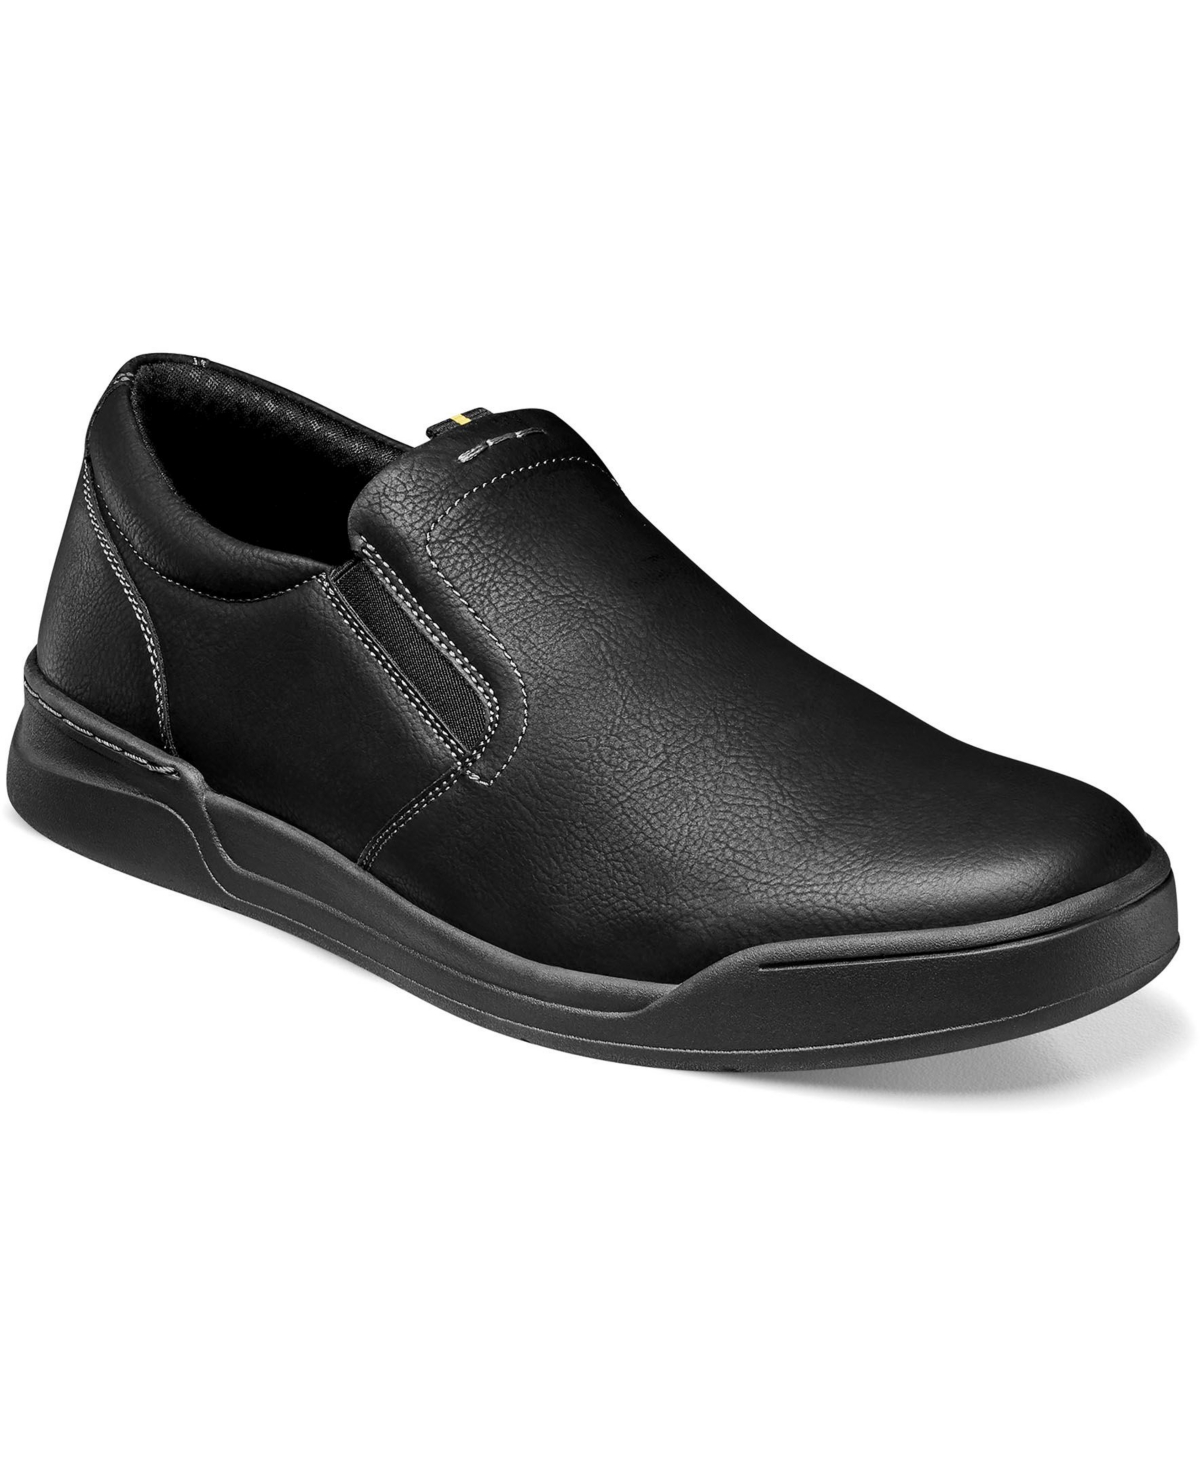 Men's Tour Work Slip Resistant Plain Toe Slip-On Loafers - Black